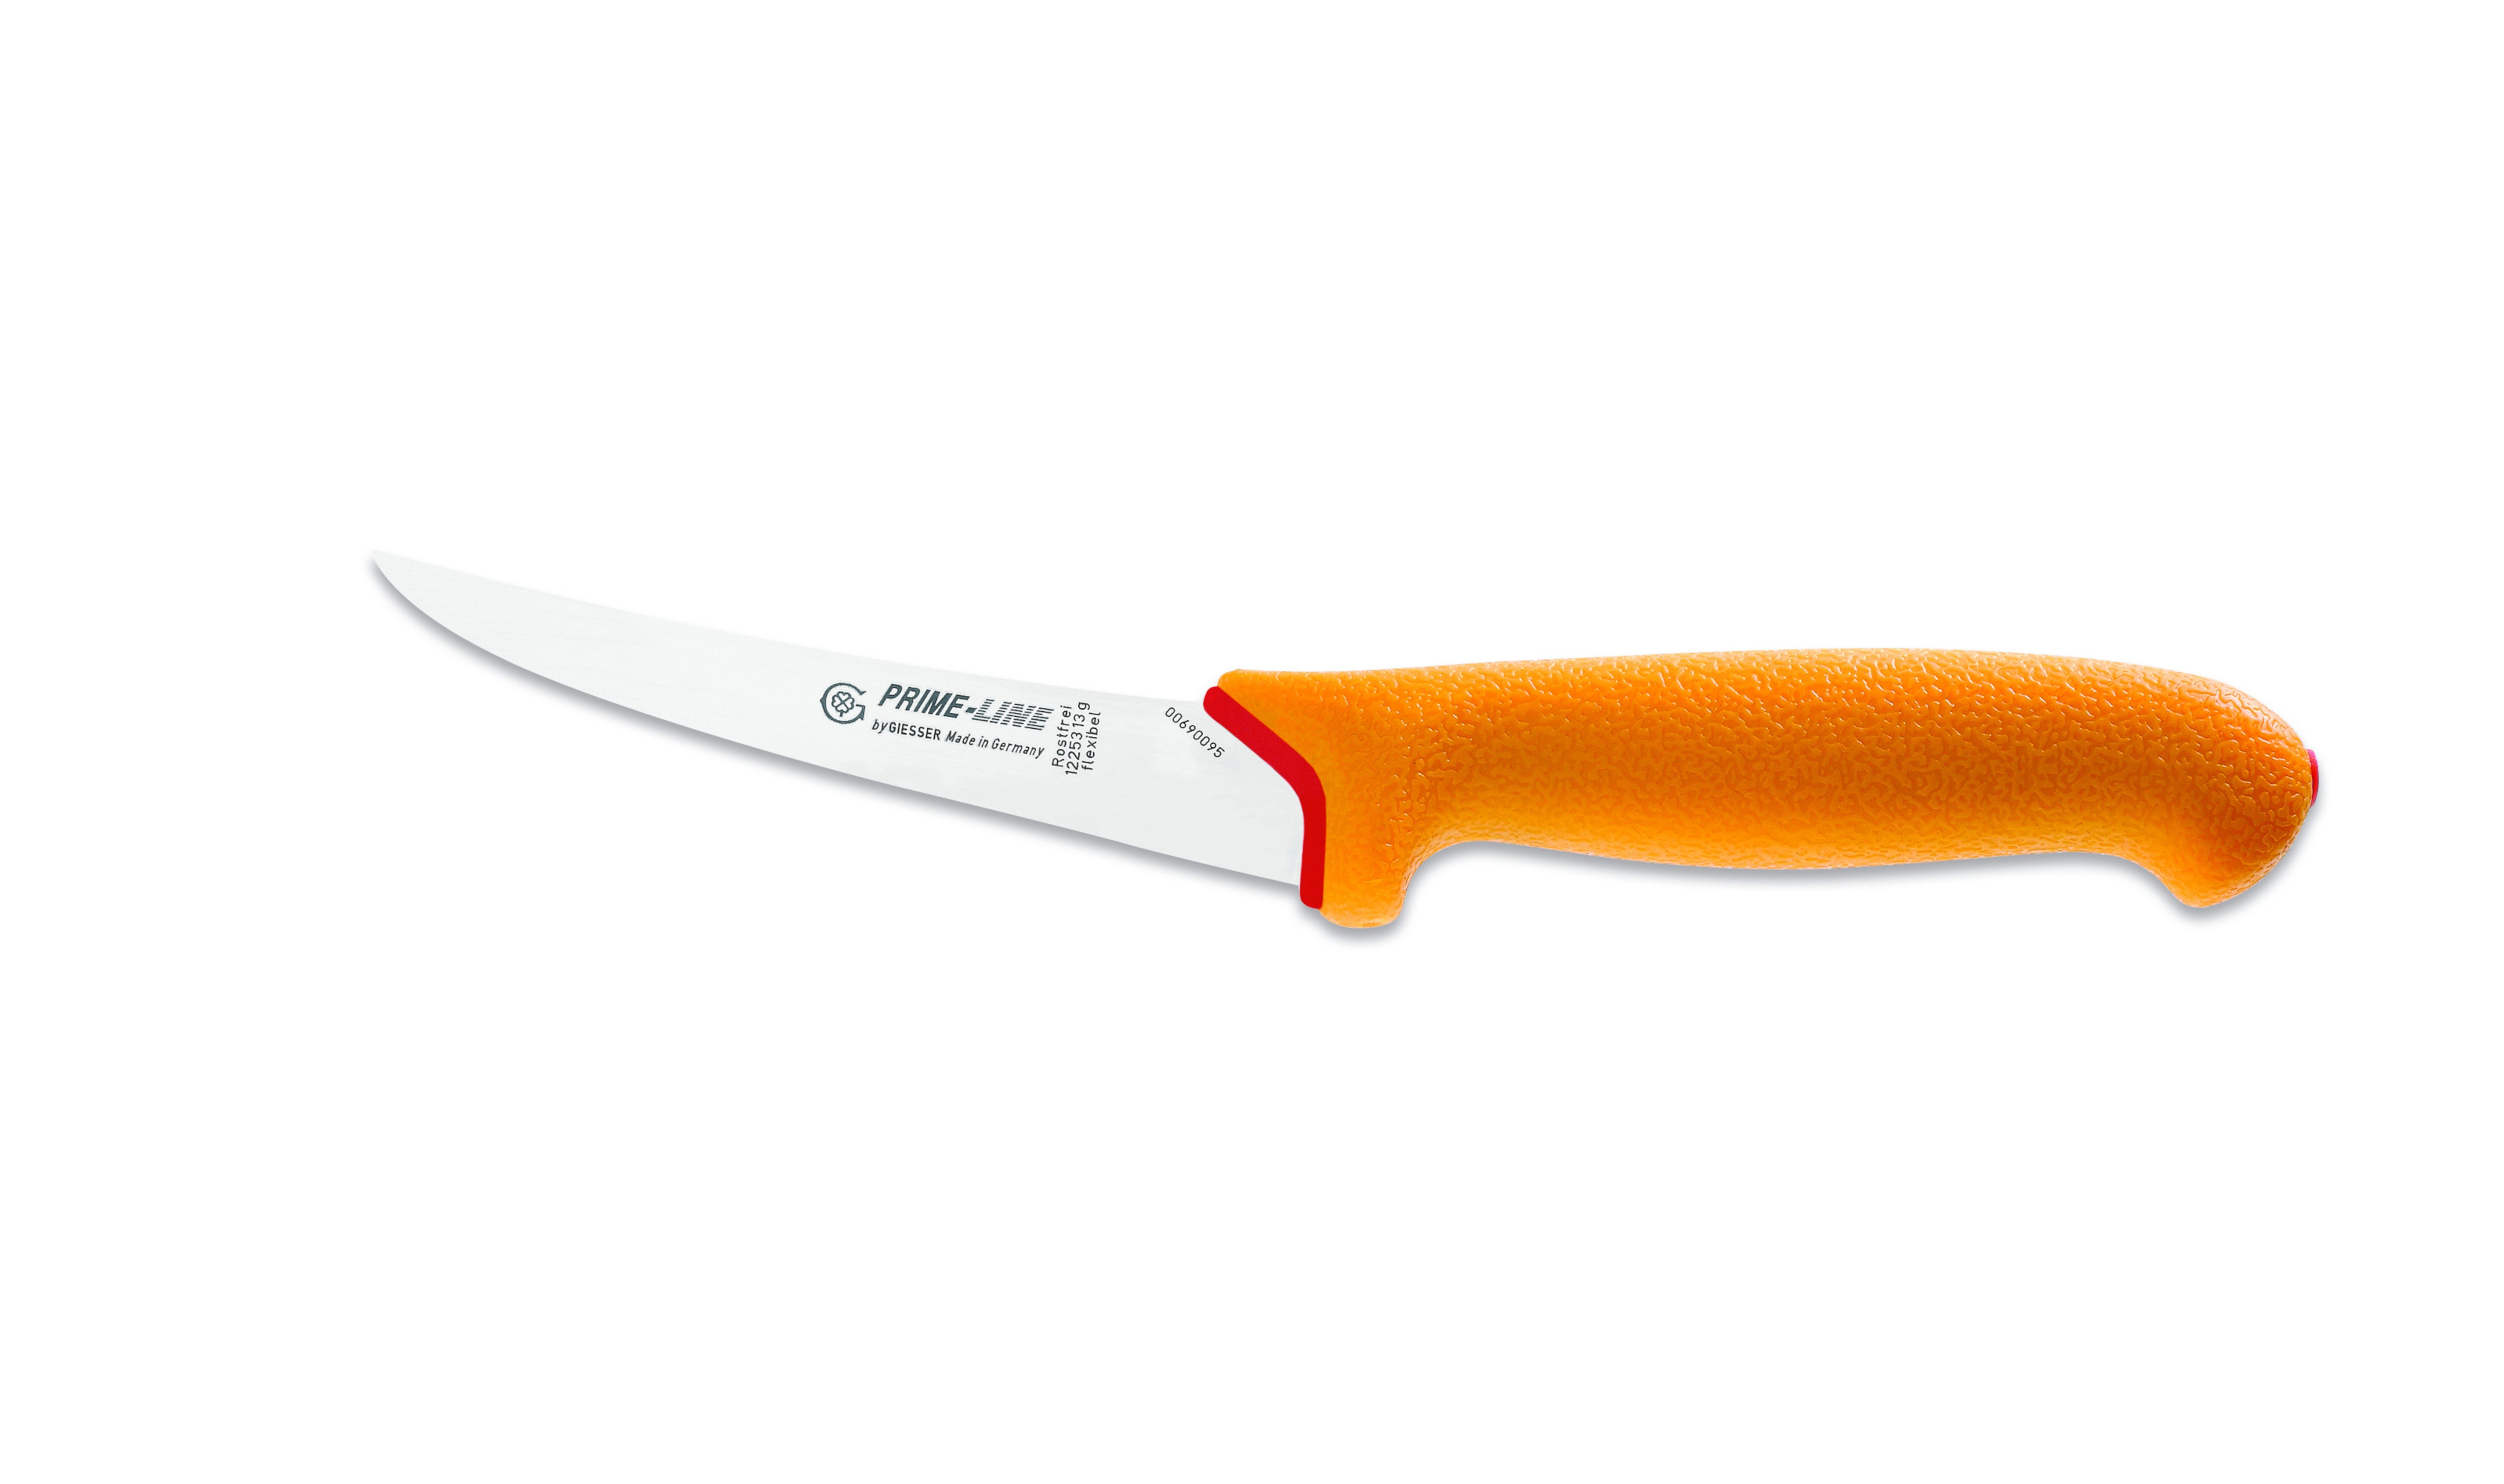 Giesser Messer Ausbeinmesser Fleischermesser 12250 13/15, PrimeLine, scharf, rutschfest, weicher Griff gelb